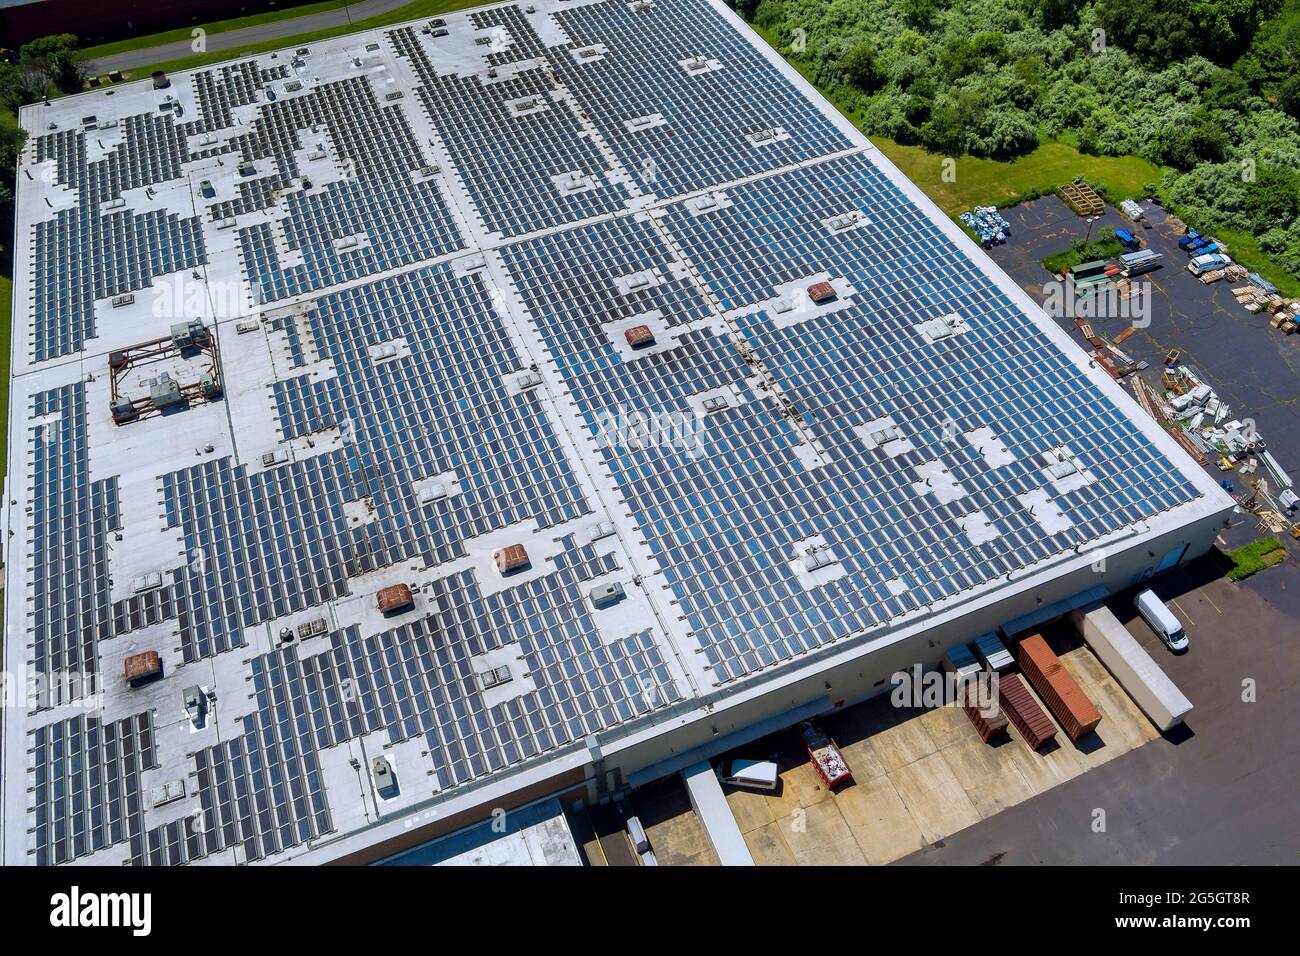 Panoramablick auf Sonnenkollektoren auf dem Werksdach absorbieren Sonnenlicht als Energiequelle, um Strom zu erzeugen und nachhaltige Energie zu erzeugen Stockfoto